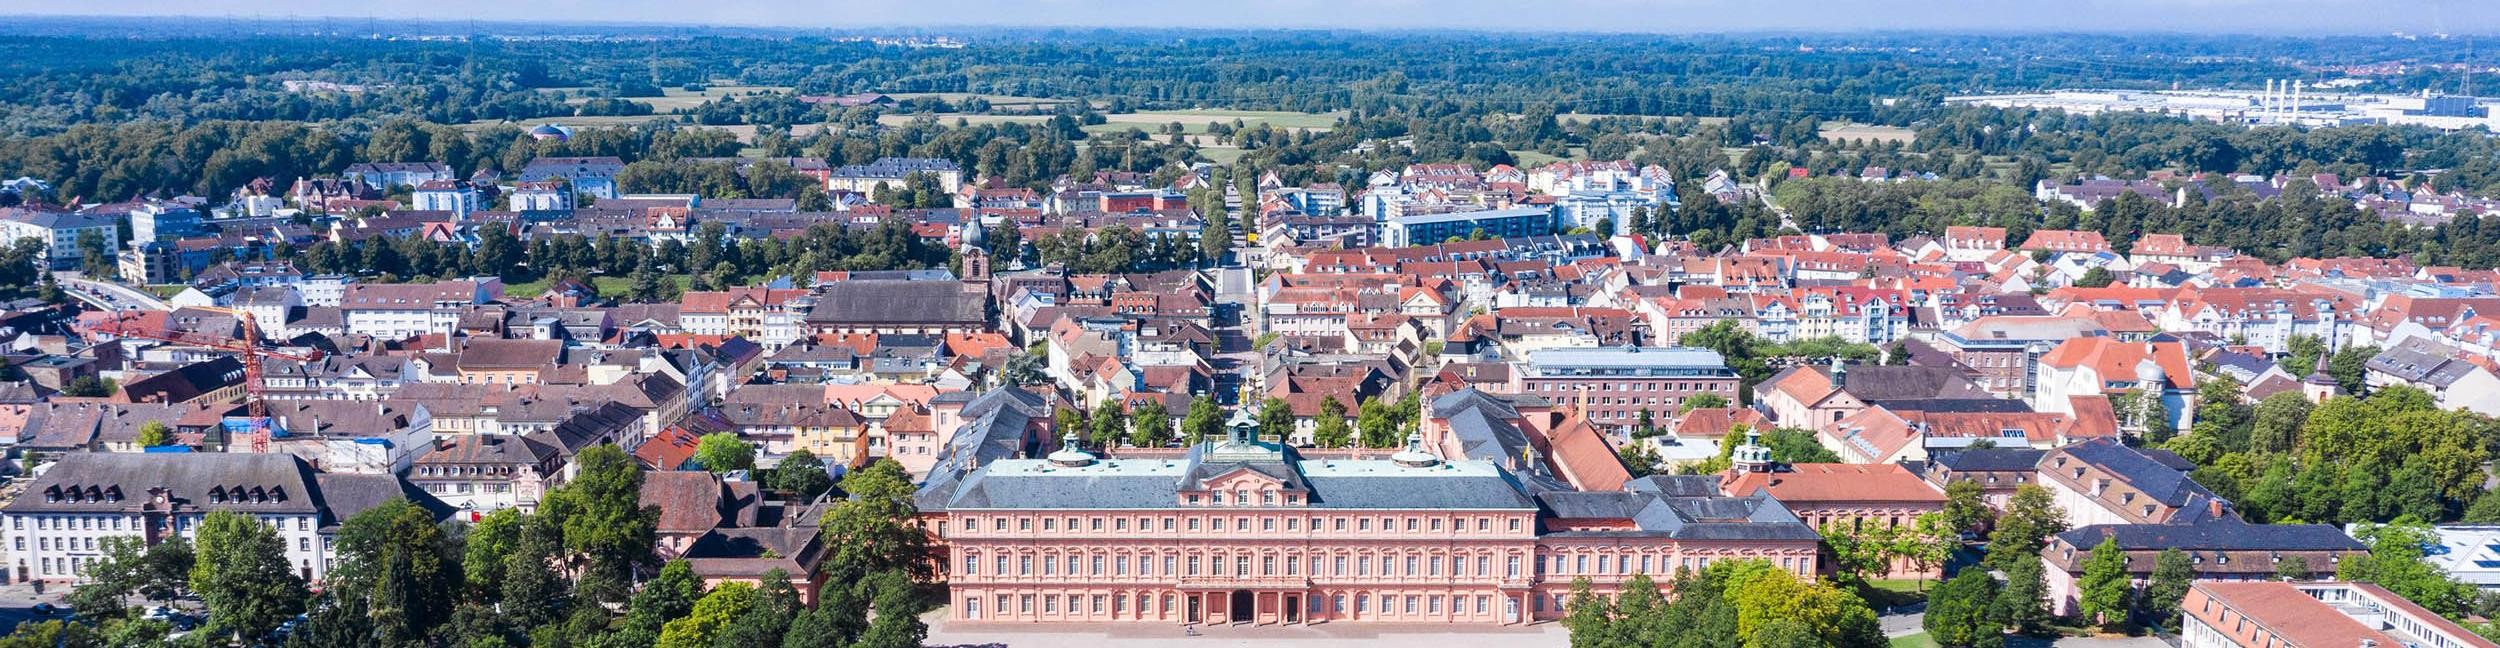 Vue aérienne du château de Rastatt et du centre-ville de Rastatt